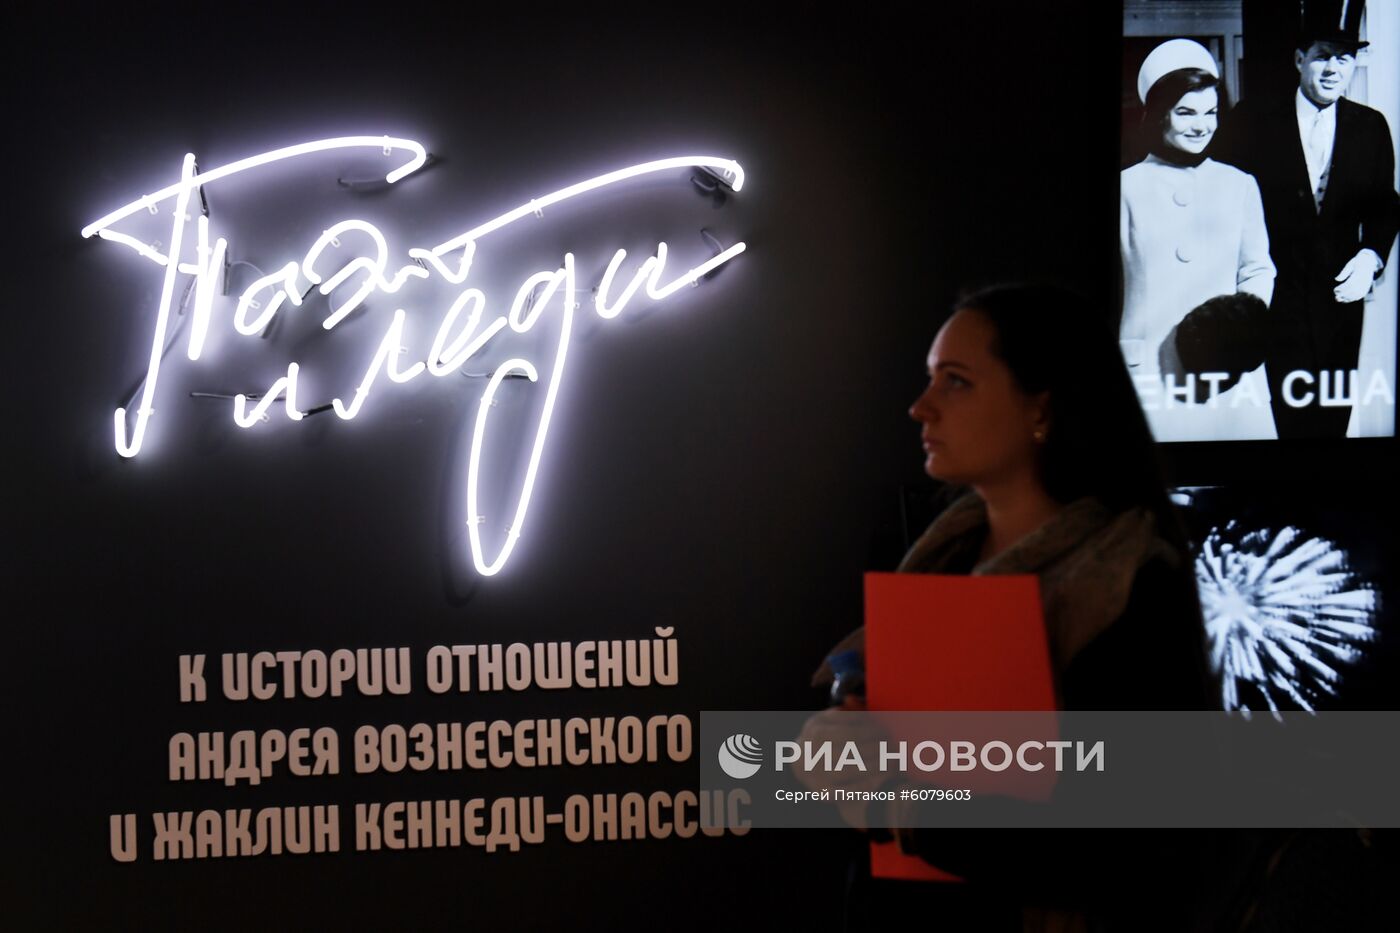 Выставка "Поэт и Леди" в Москве